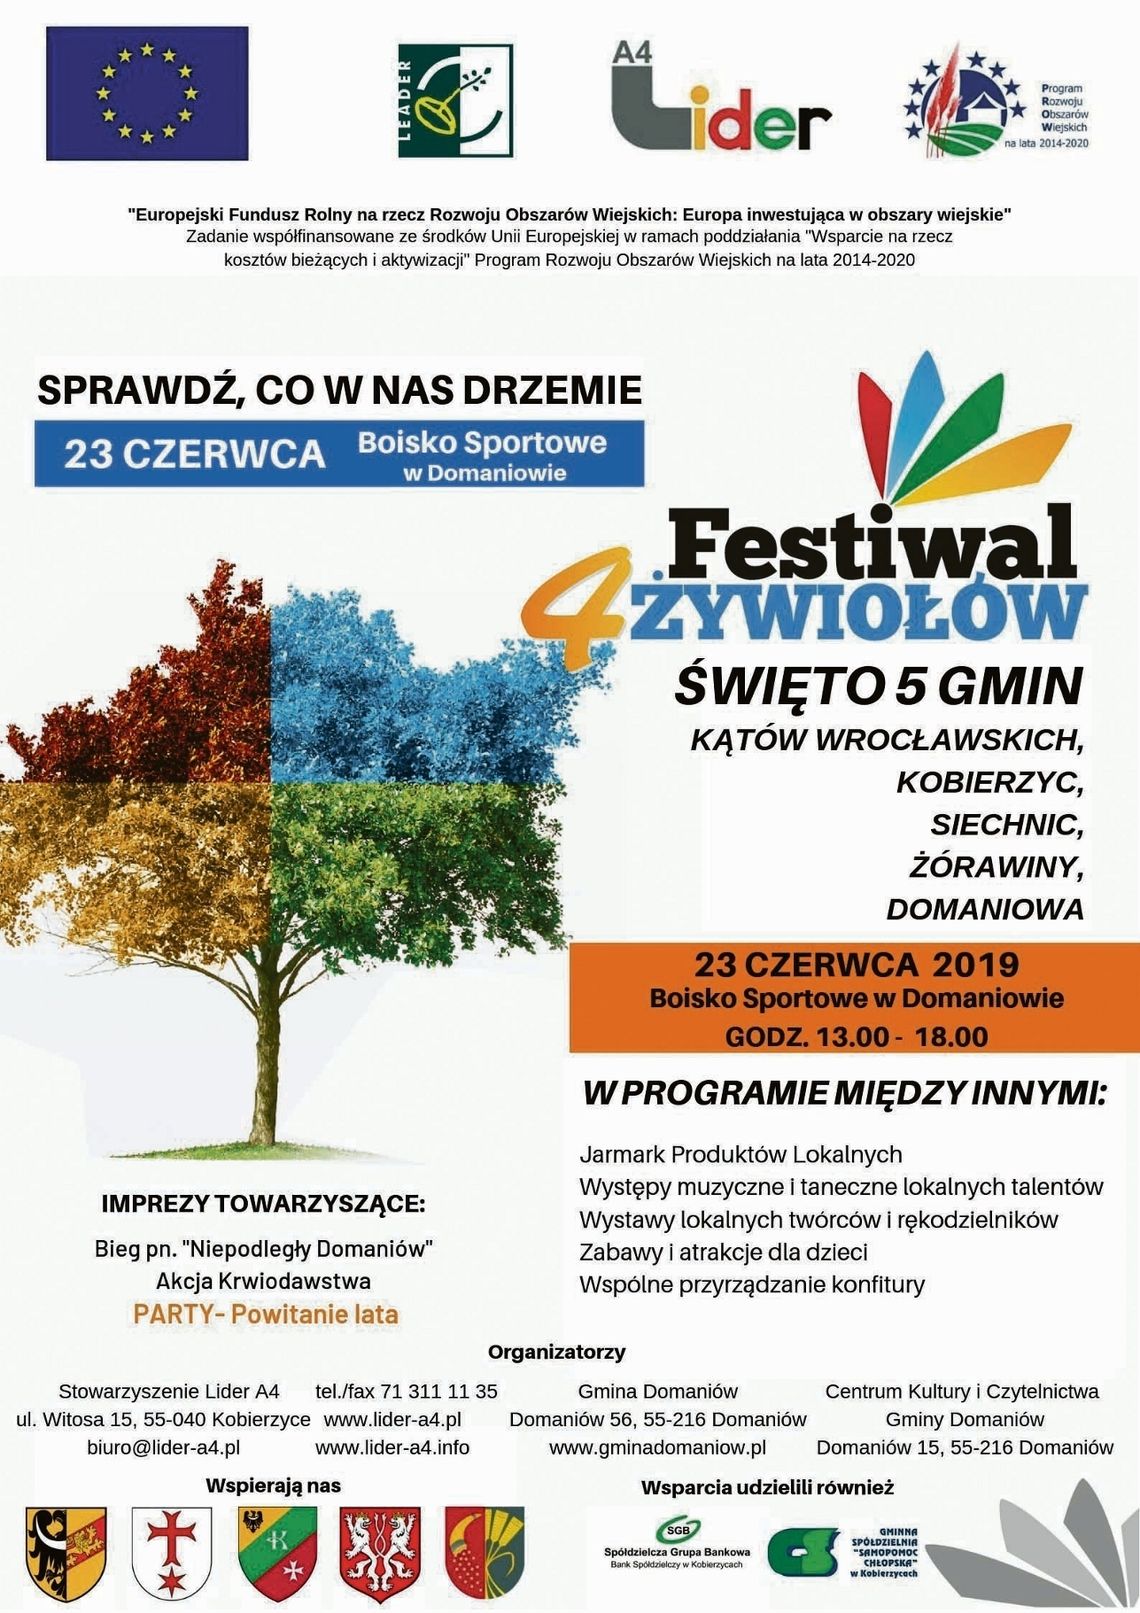 Festiwal 4 żywiołów